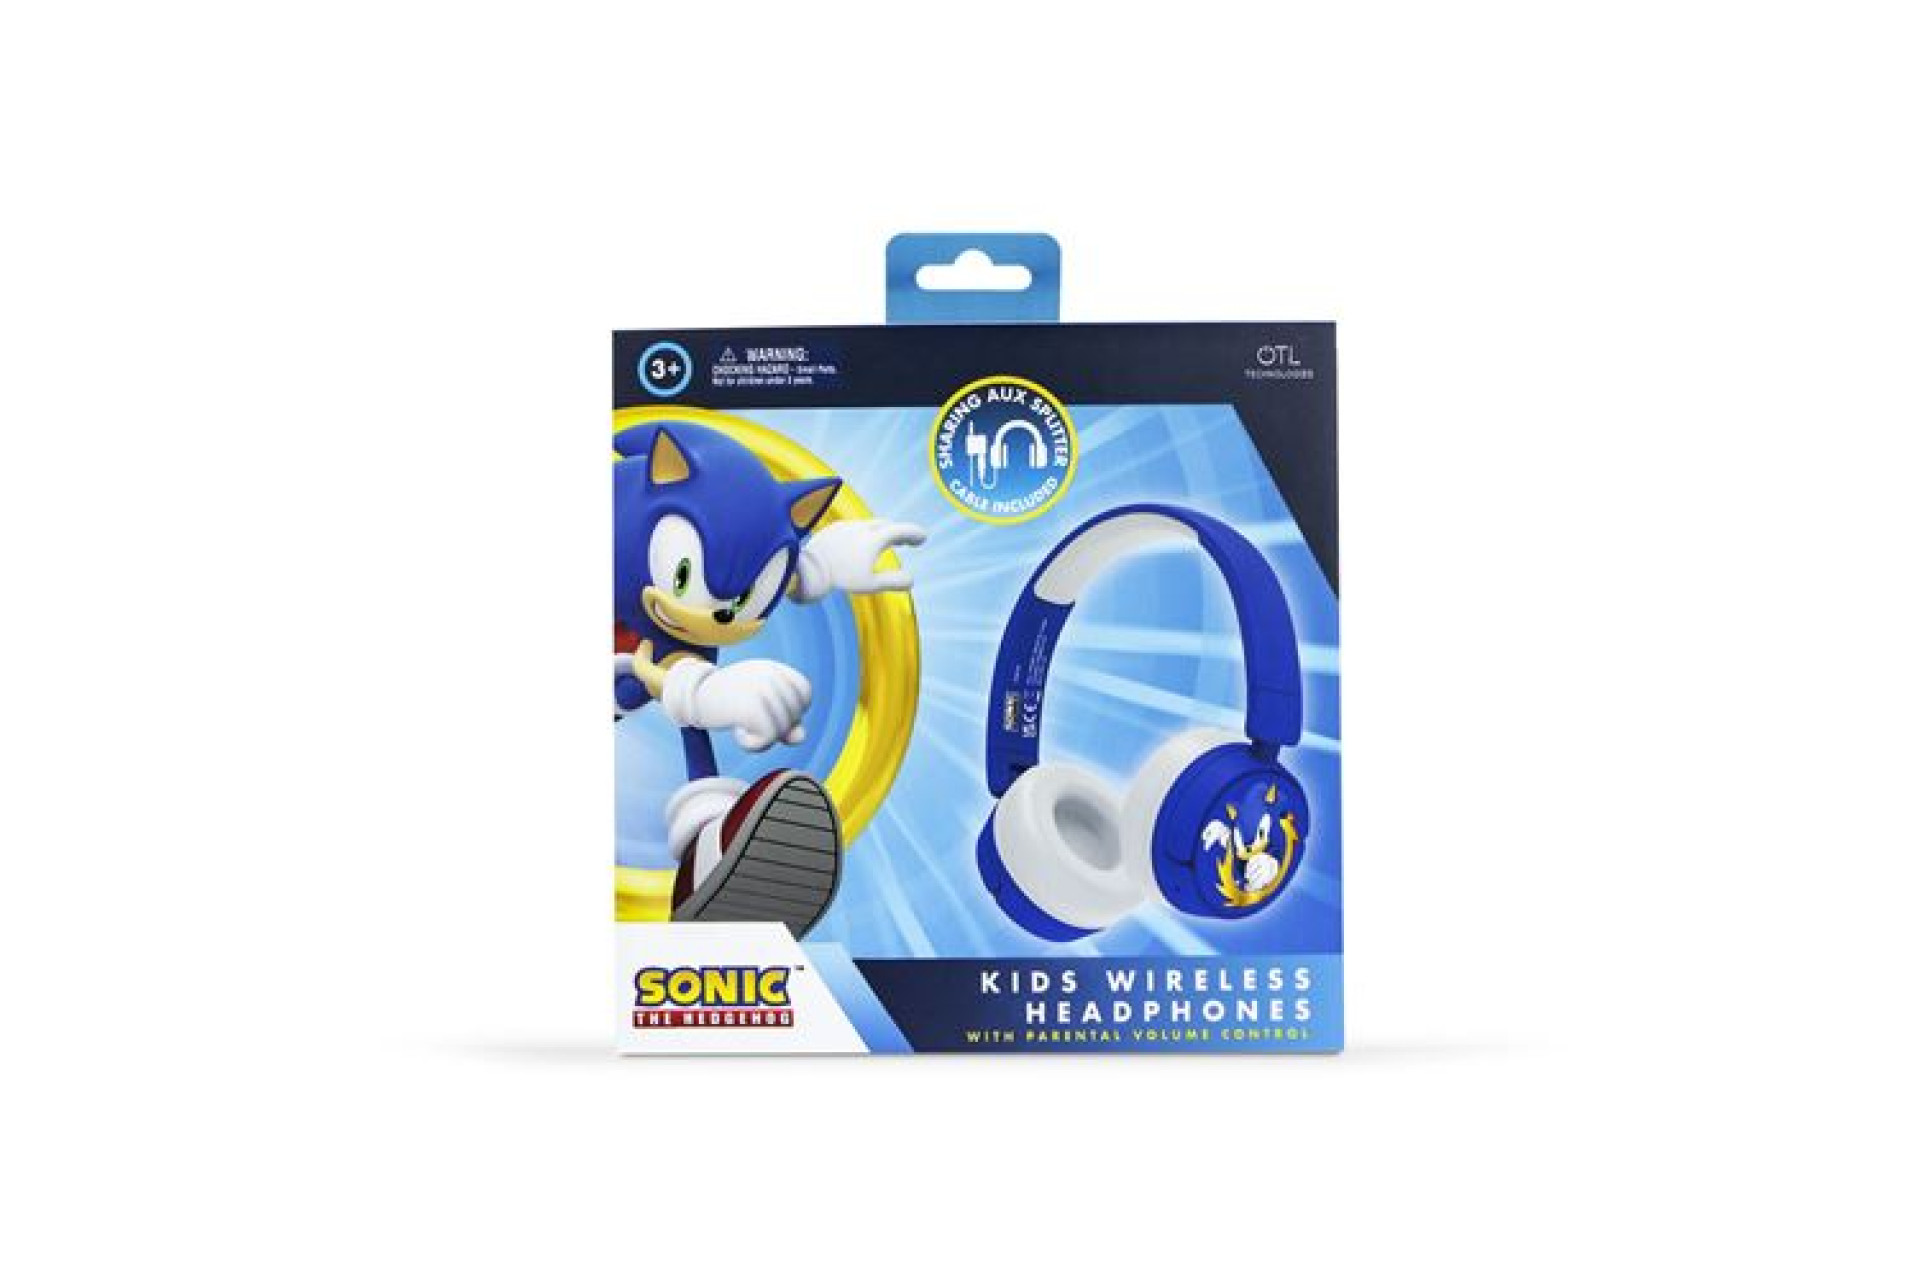 Acheter Jeu éducatif et électronique Otl Sonic the Hedgehog Kids Wireless Headphones